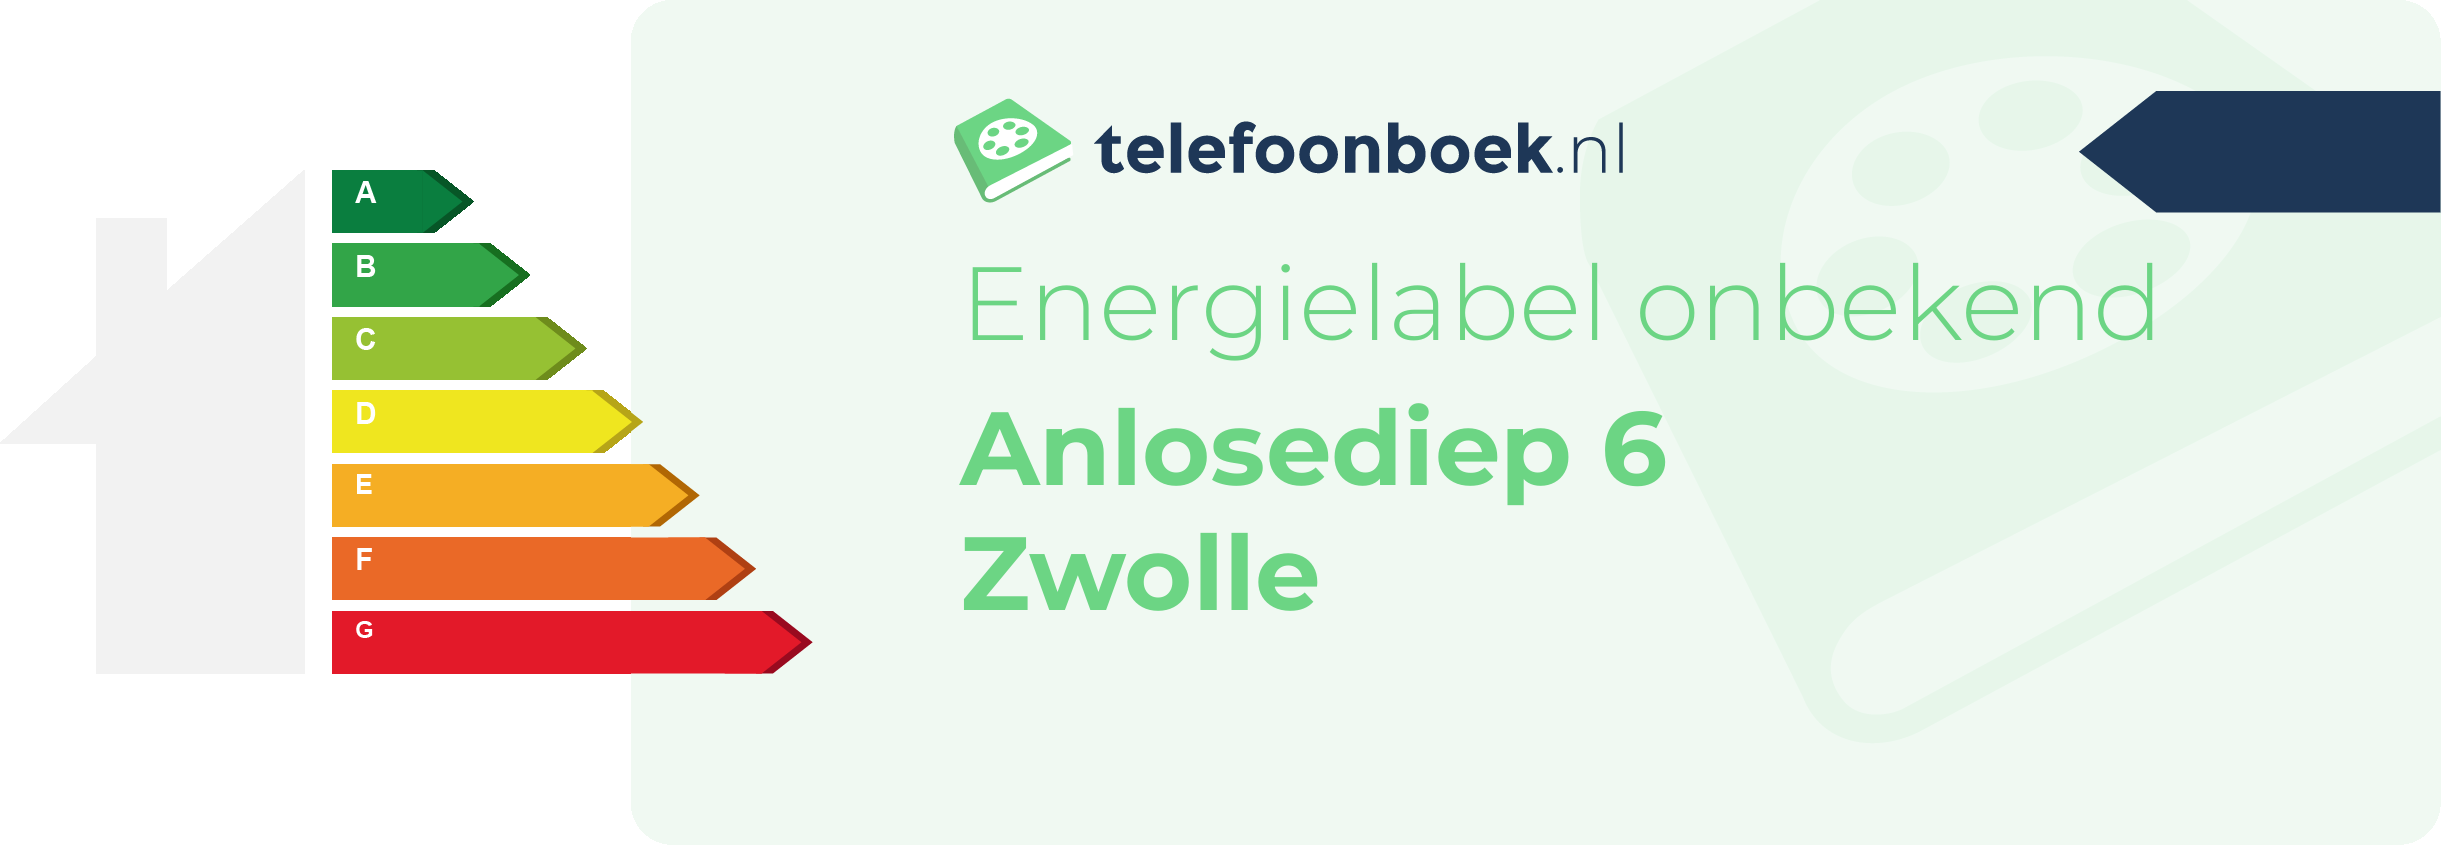 Energielabel Anlosediep 6 Zwolle